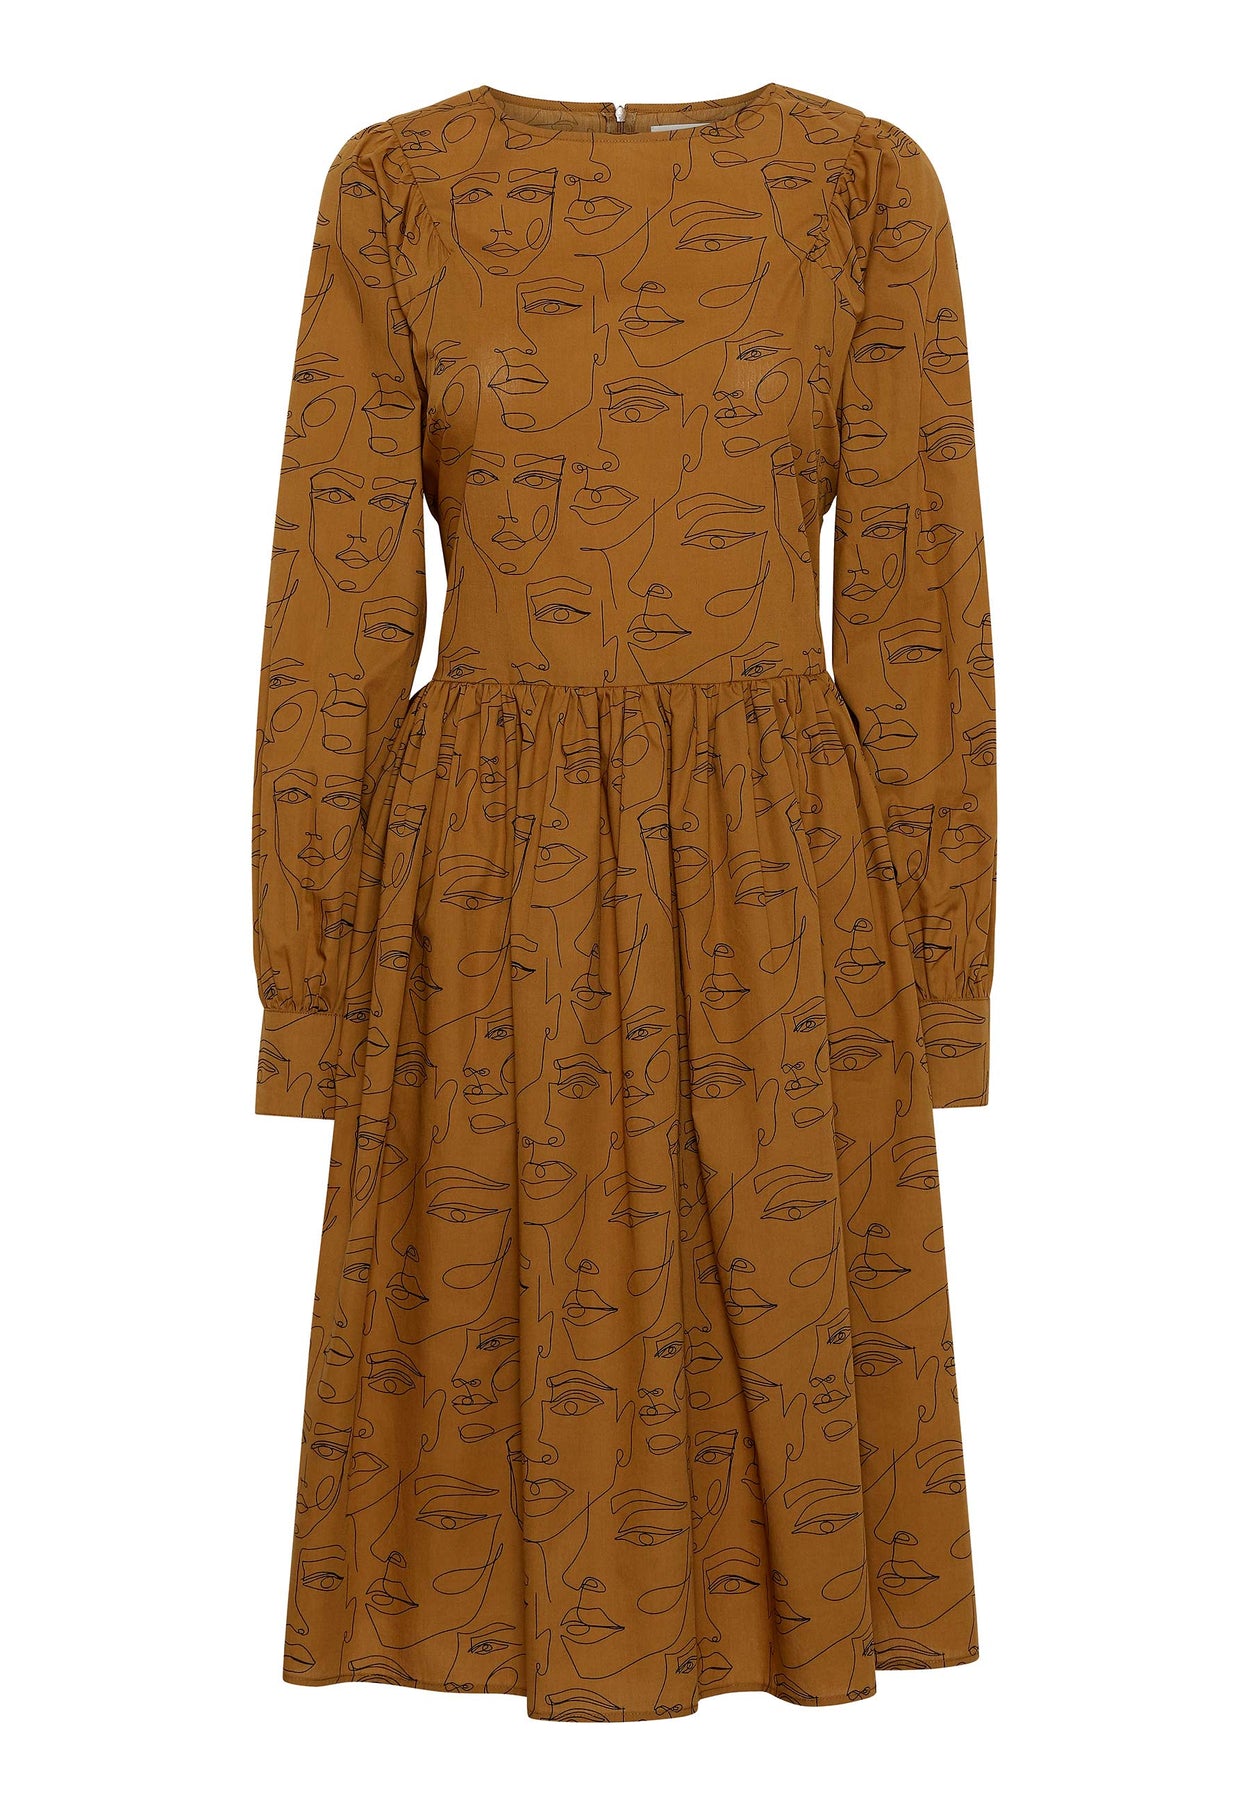 GROBUND Sibyl kjolen - den med det brede bindebånd